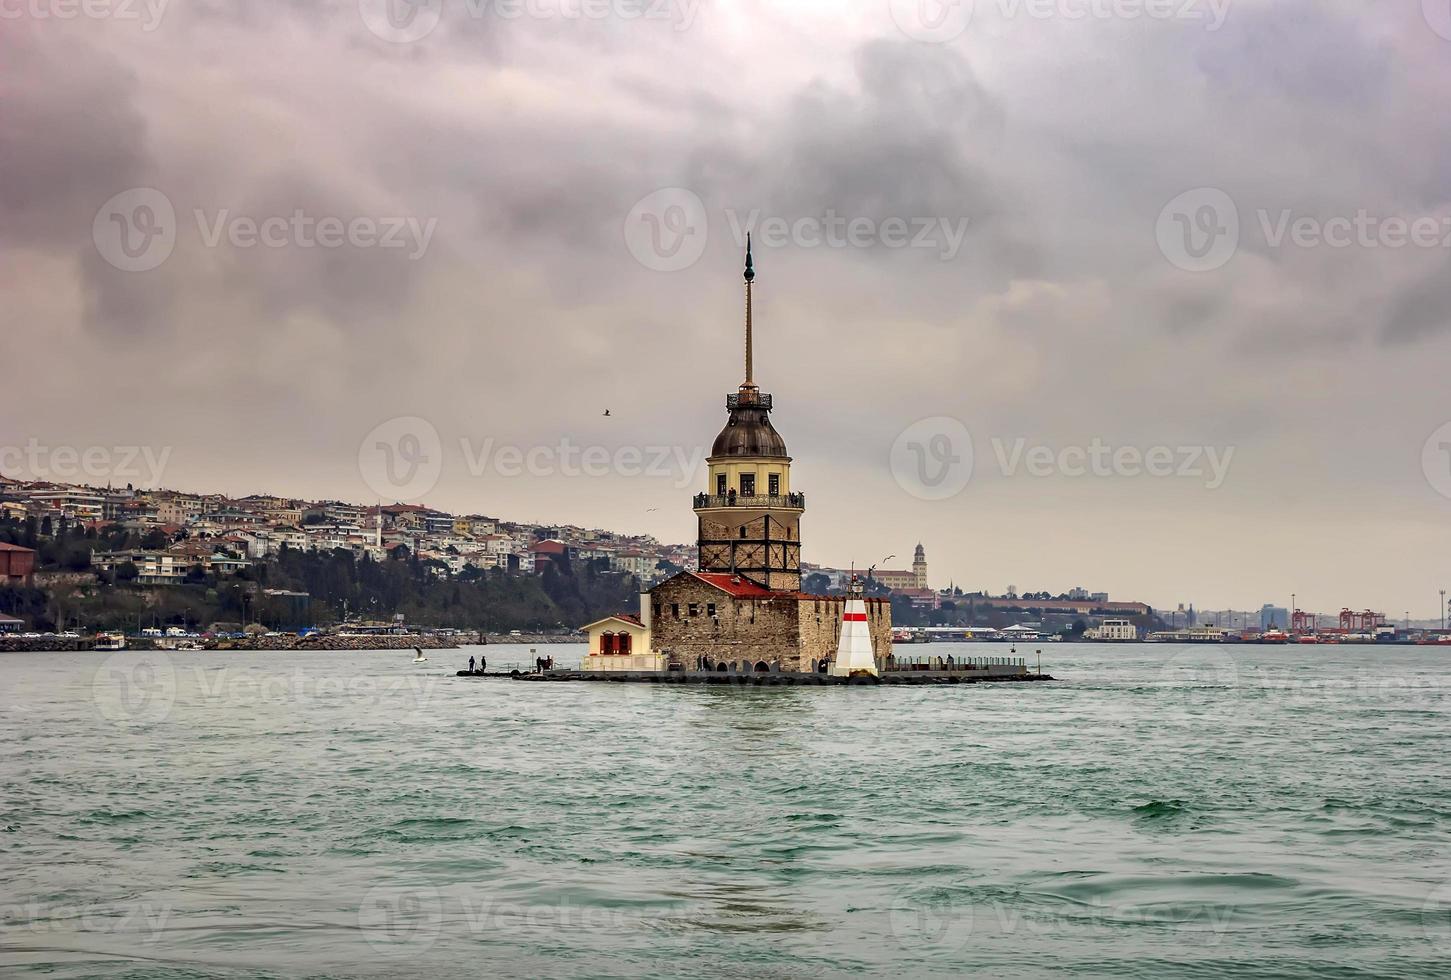 meisje toren , toren van leandros, kiz kulesi, rustig landschap Bij de Ingang naar bosporus zeestraat in Istanbul, kalkoen foto